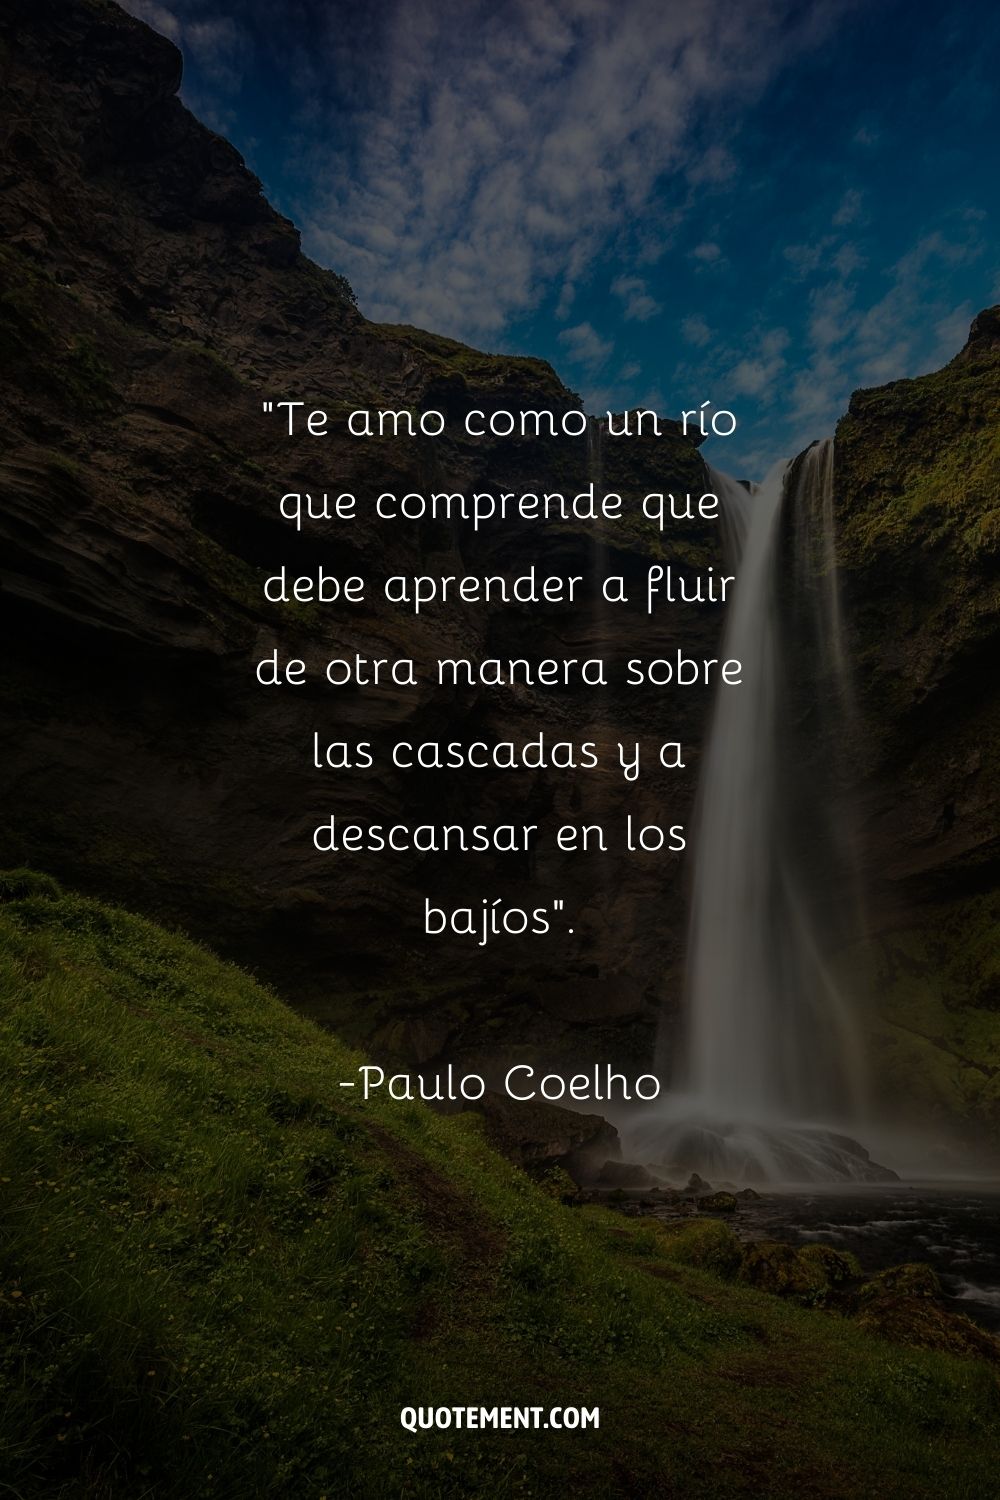 Paulo Coelho comparando su amor con un río, y una cascada al fondo, también